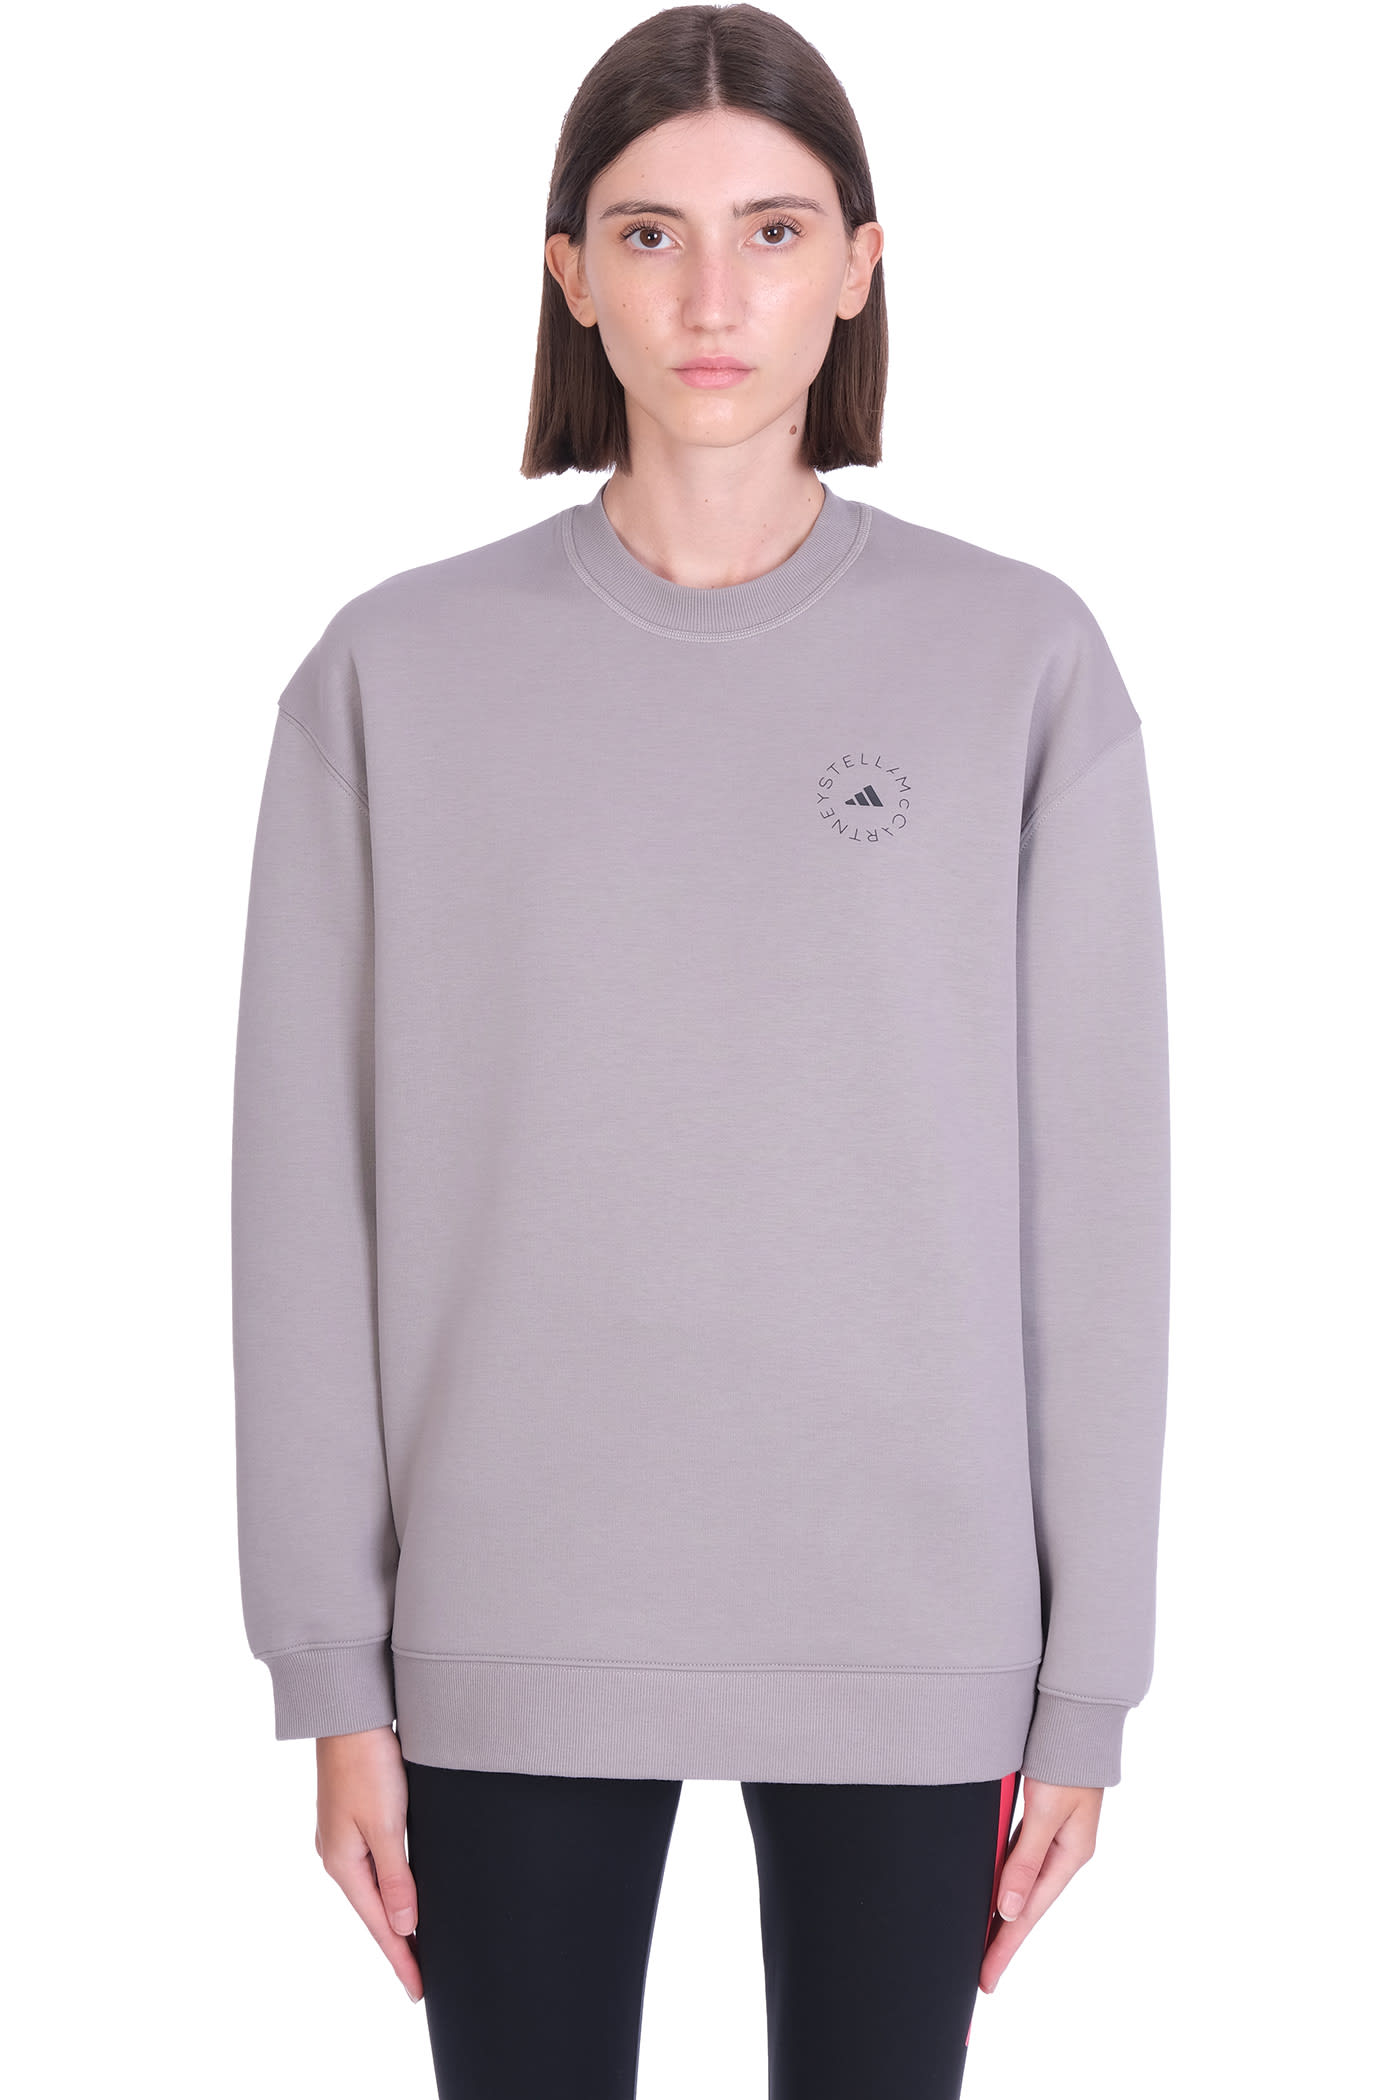 Adidas by Stella McCartney Sweatshirt In Grey Cotton